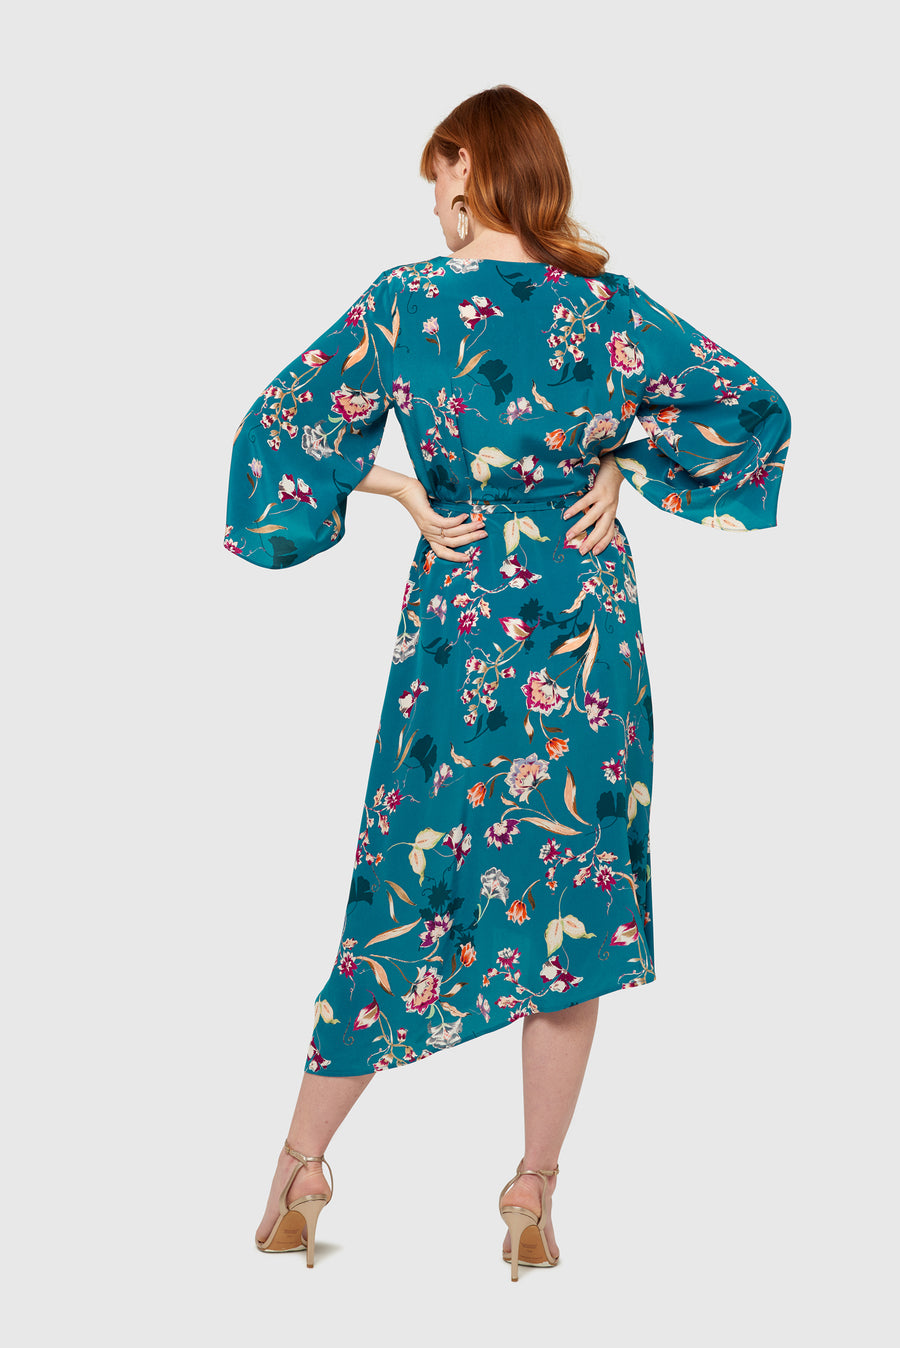 Peacock Bloom Kimono Wrap Dress – Lozen